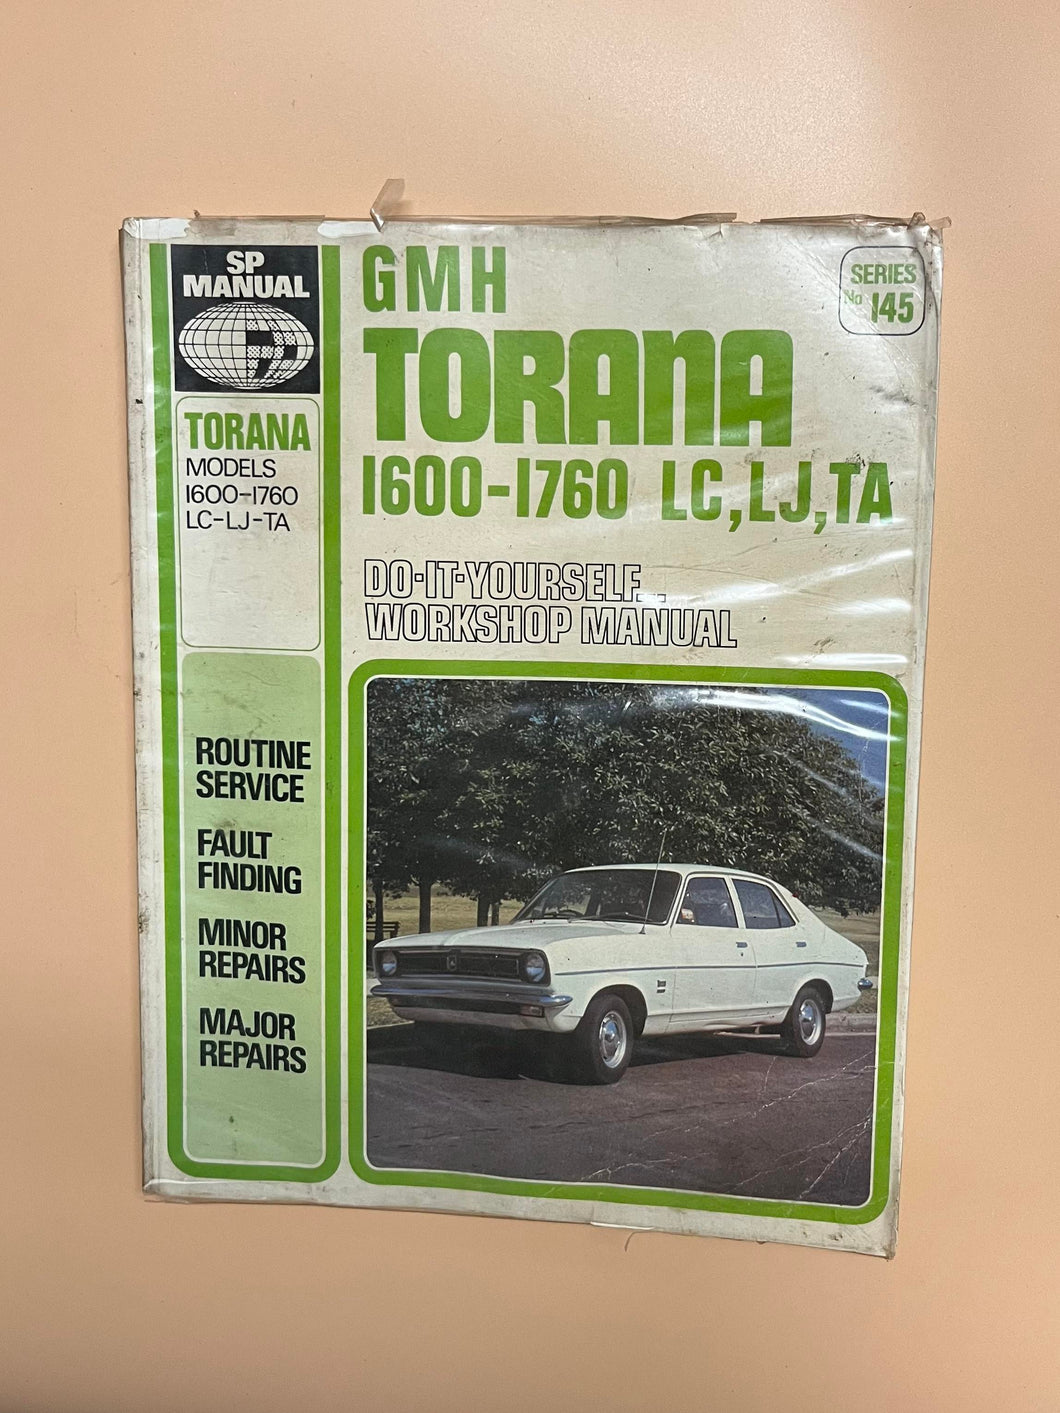 GMH Torana 1600-1760 LC, LJ, TA Workshop Manual